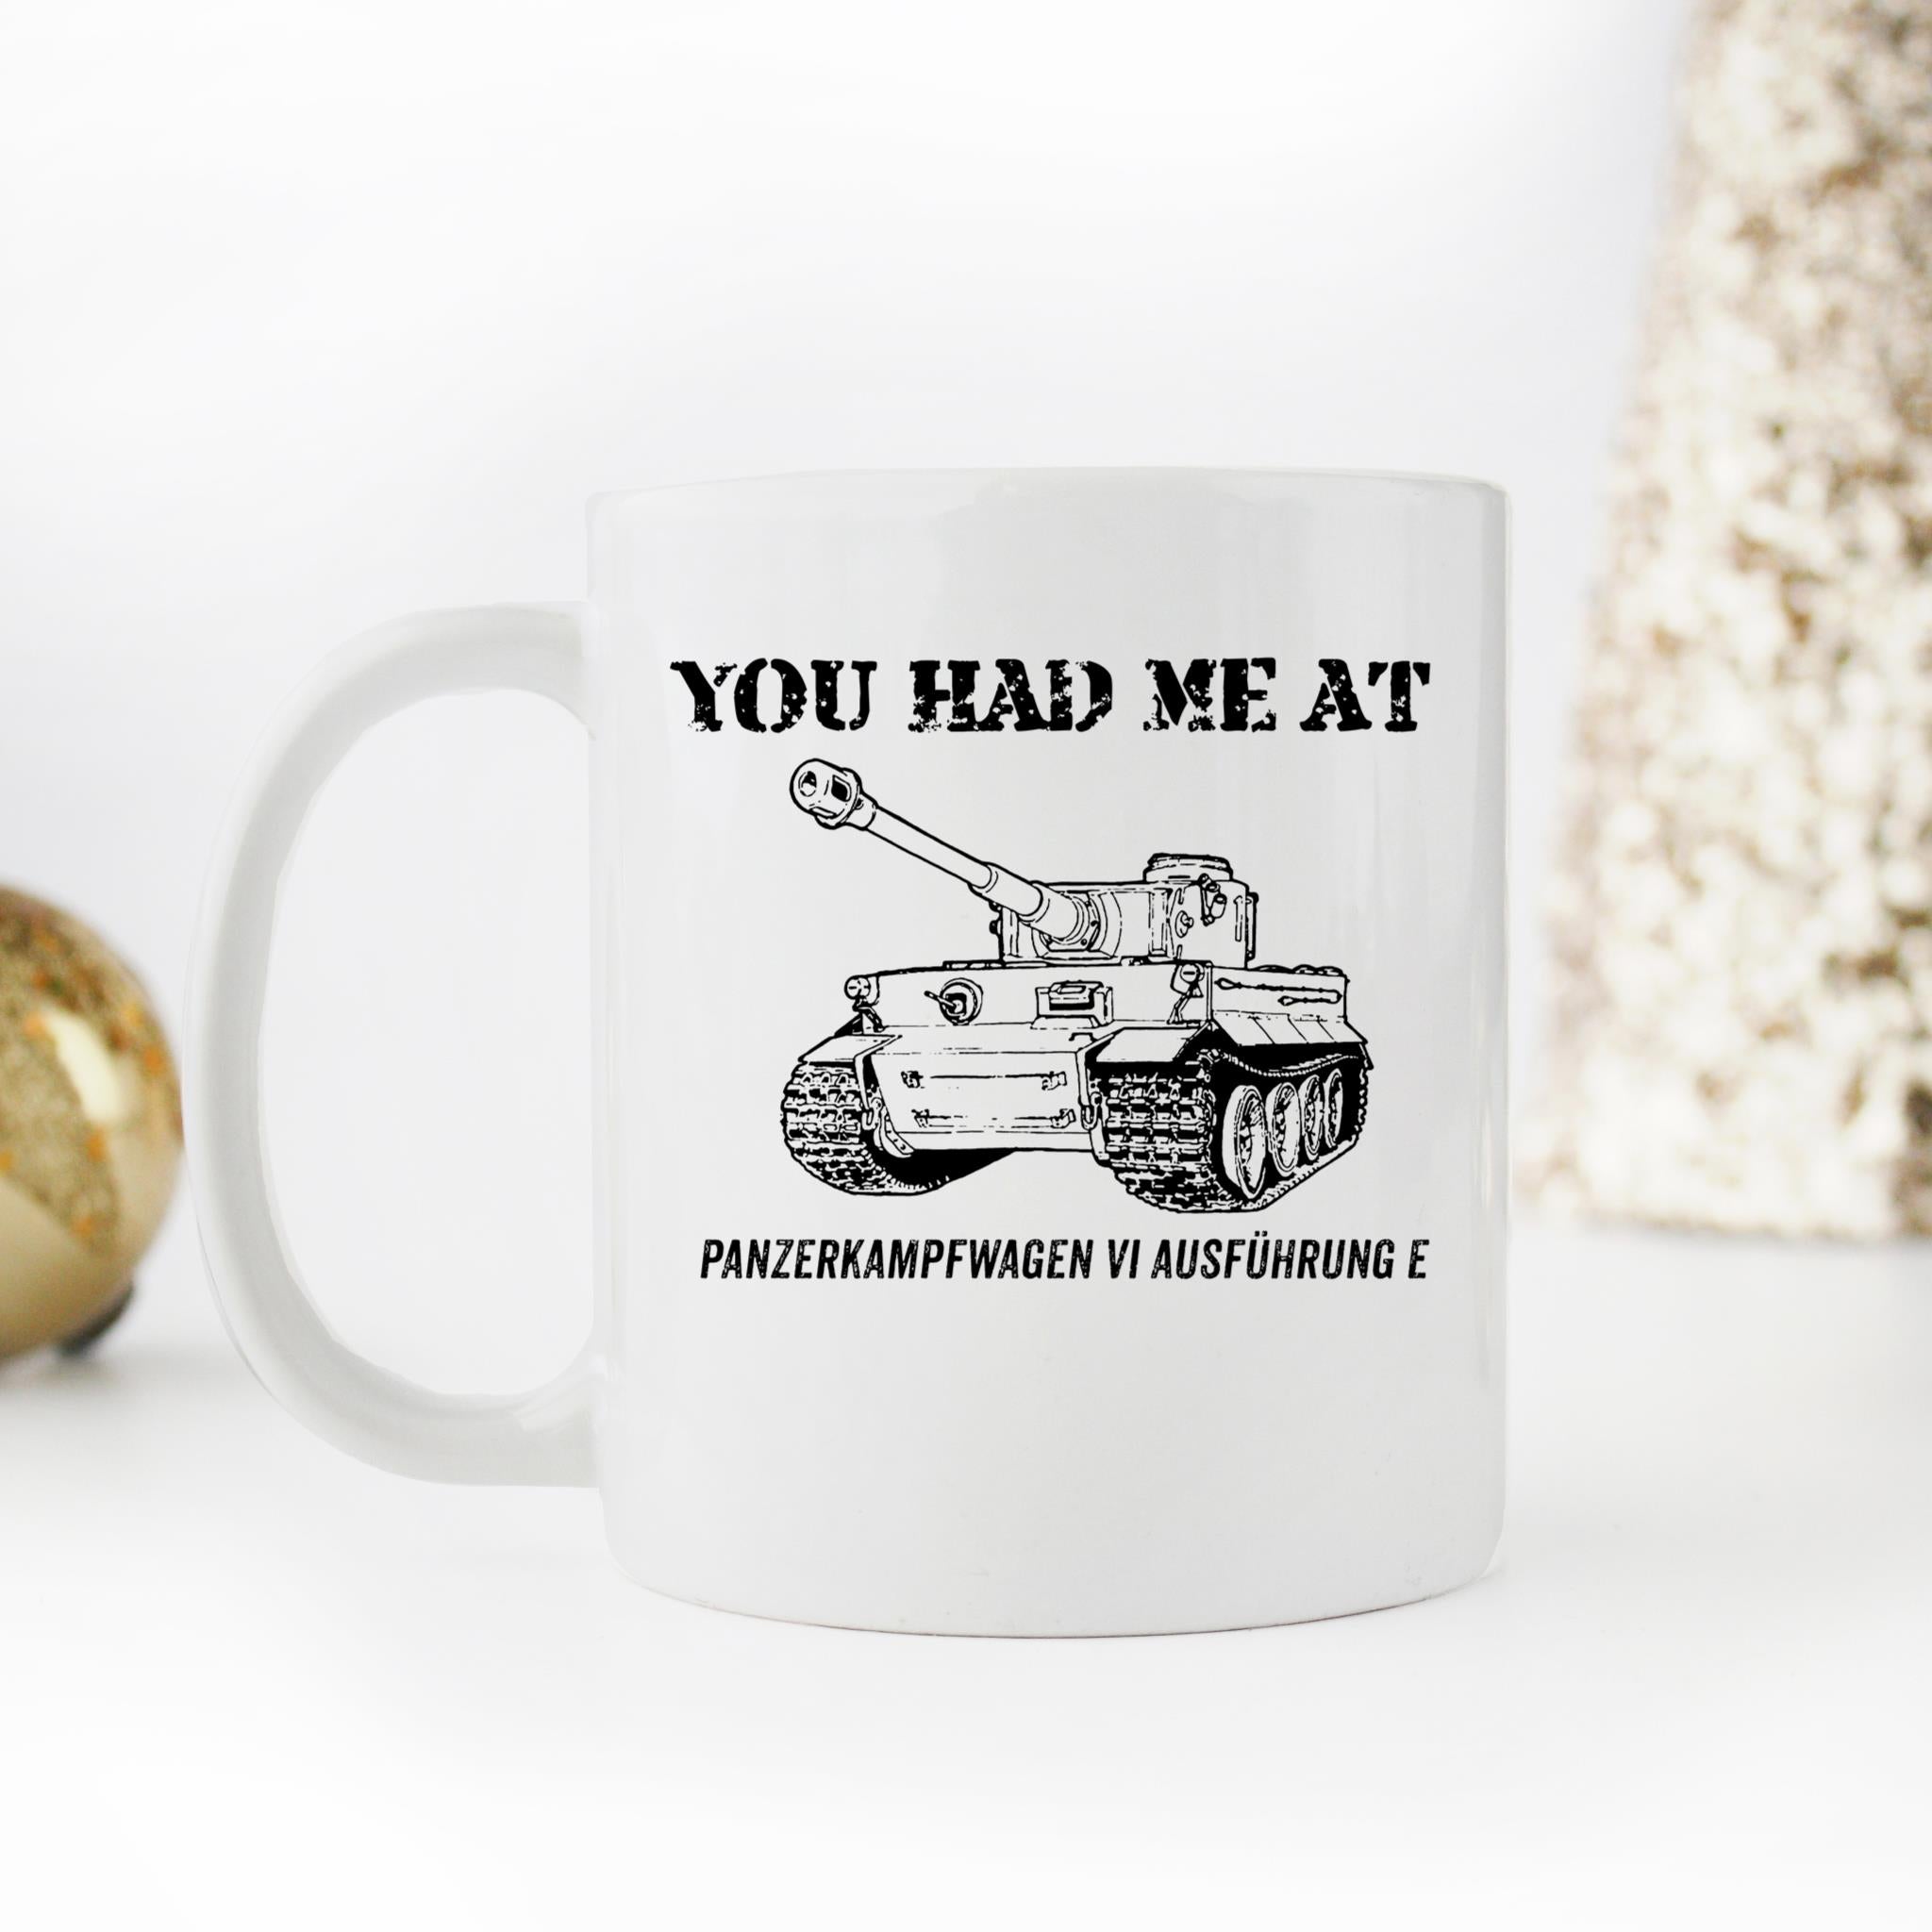 Skitongifts Coffee Mug Funny Ceramic Novelty You Had Me At - Panzerkampfwagen Vi Ausführung E VTf7KcX